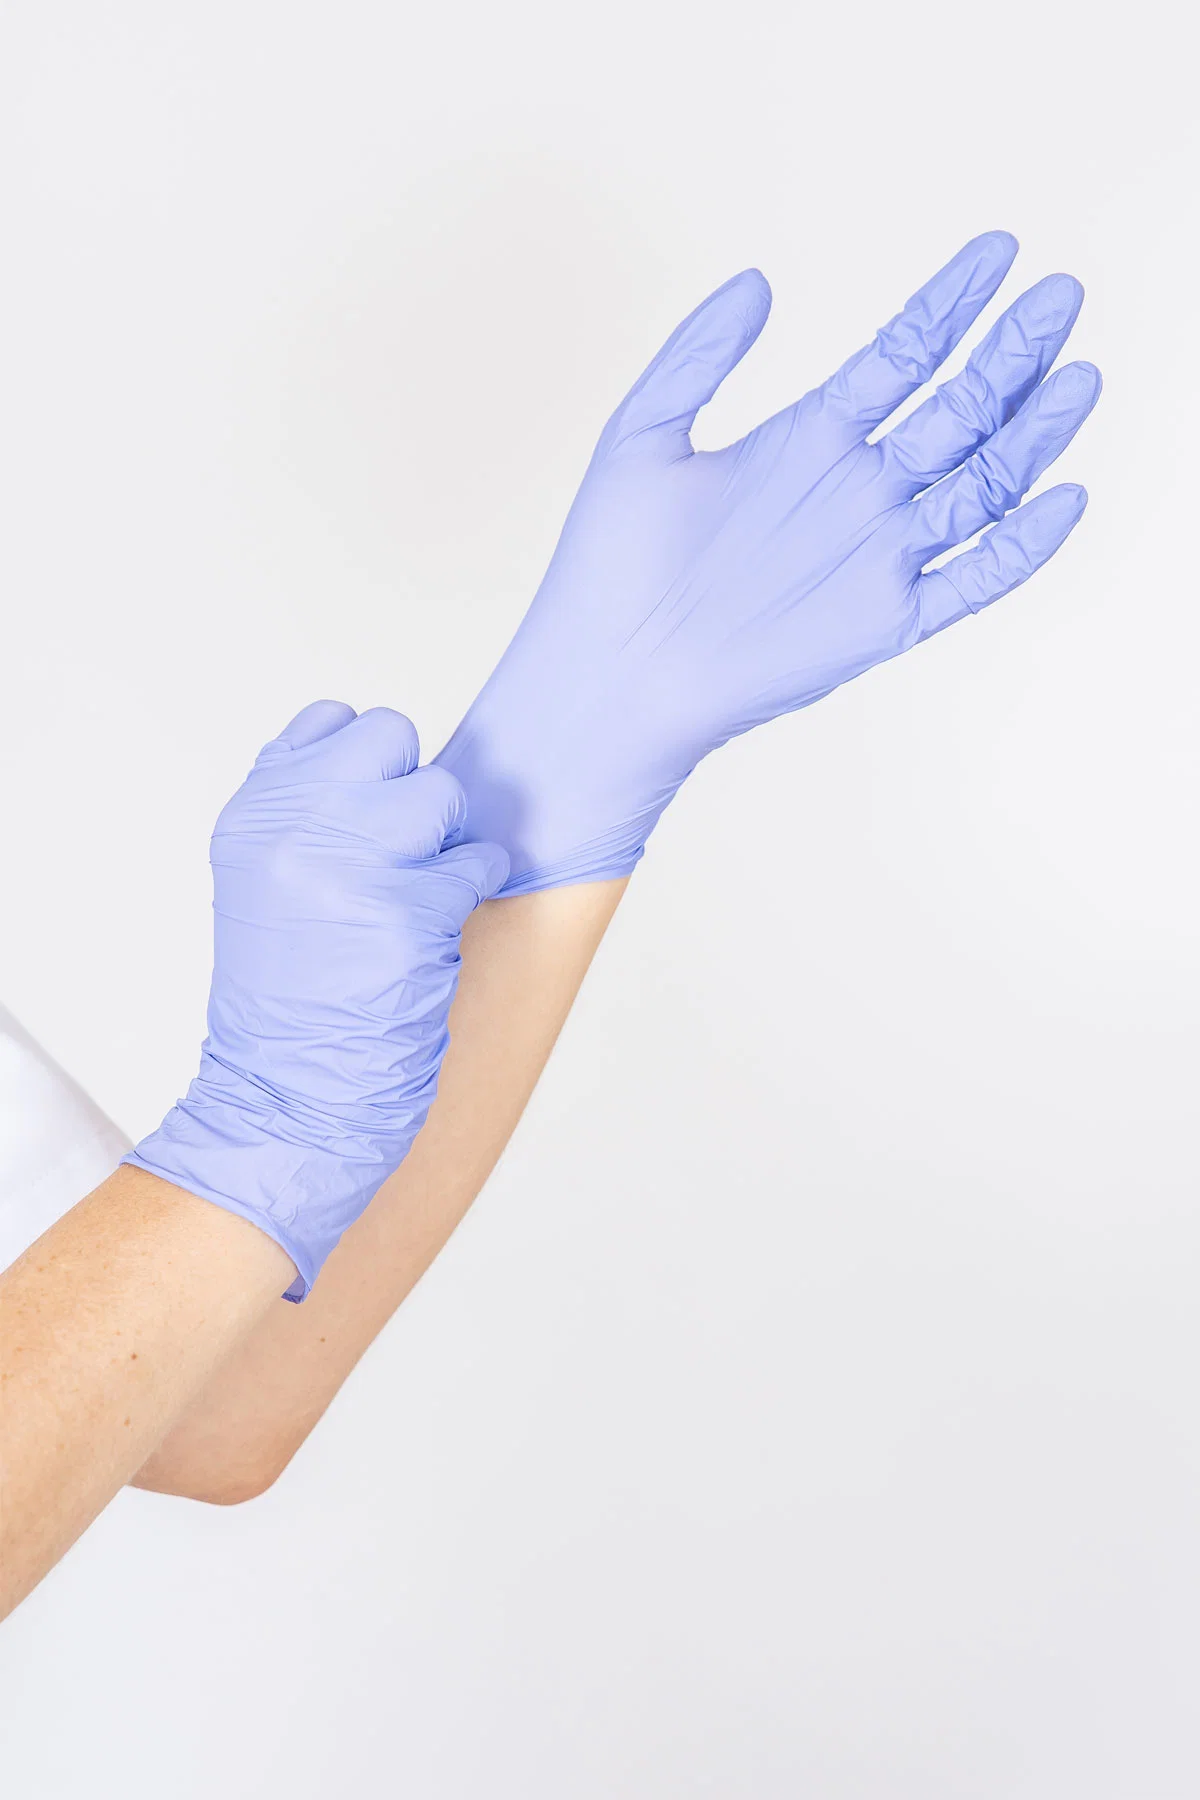 Siny Heißer Verkauf Einweg-Medizinische Versorgung Glatte Pockmarked Steril Chirurgisch Klinik Sanitäter Handschuhe